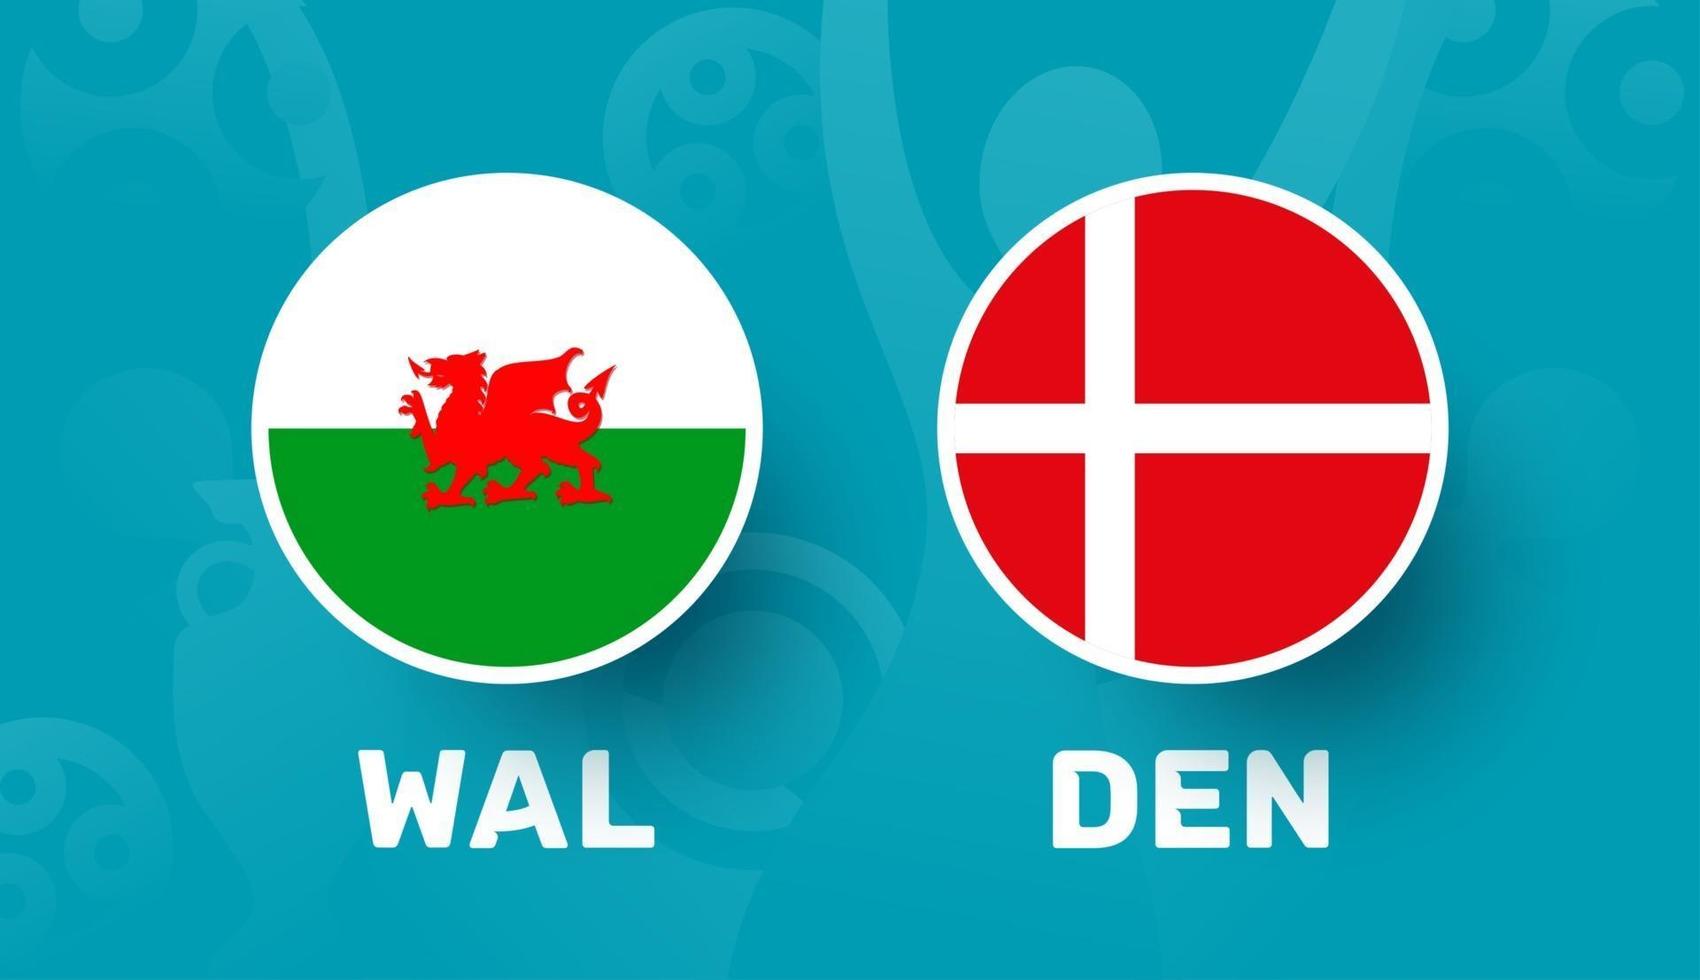 Pays de Galles vs Danemark ronde de 16 match, illustration vectorielle du championnat d'Europe de football 2020. match de championnat de football 2020 contre équipe intro sport background vecteur